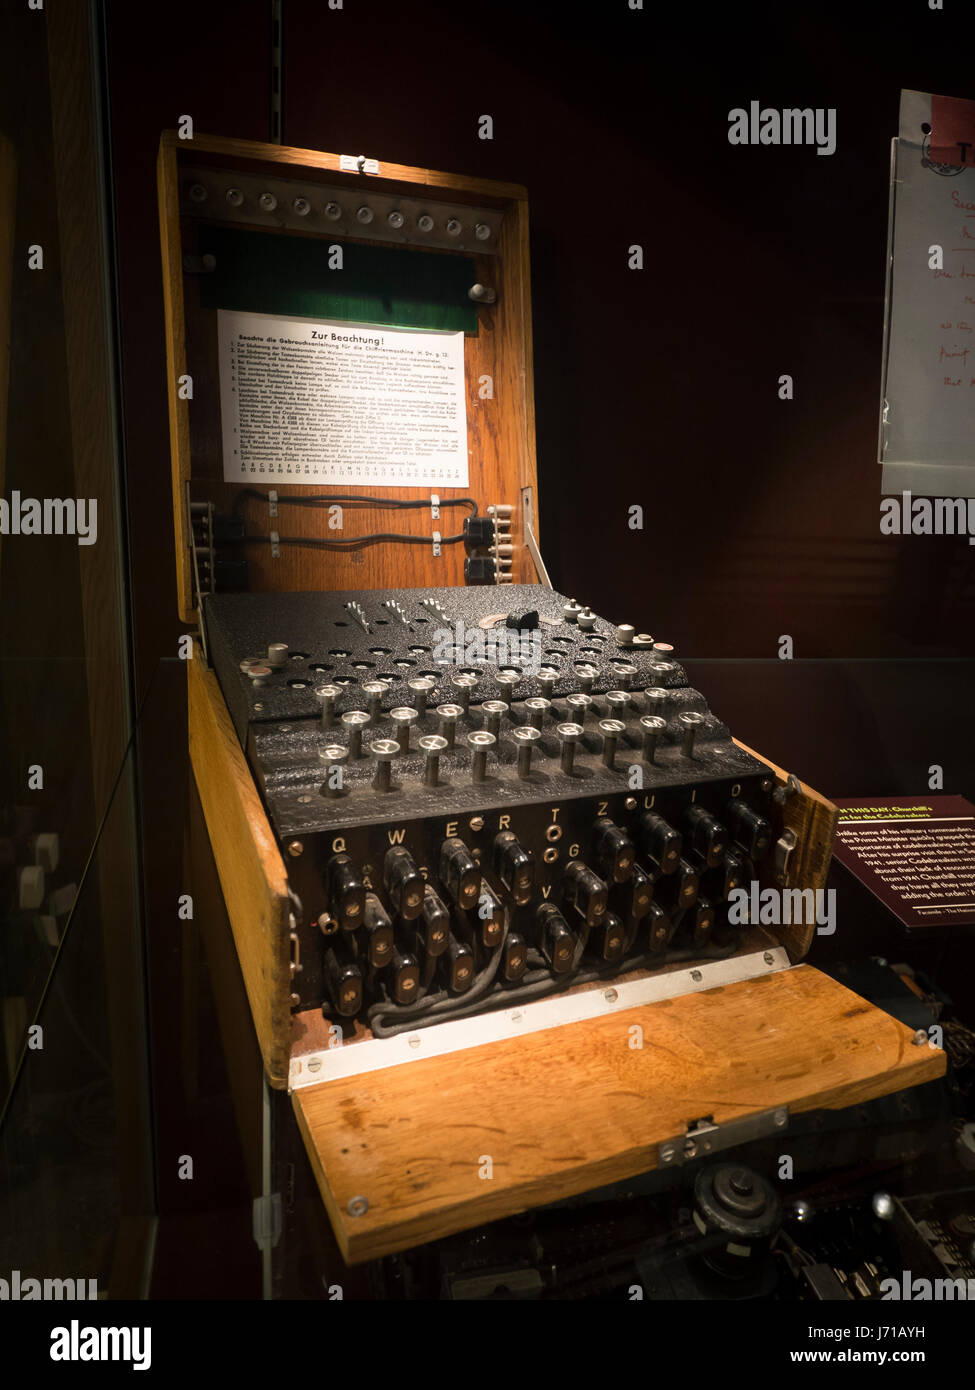 Un original, portable champ machine Enigma utilisée par les Nazis pendant la Seconde Guerre mondiale pour encoder des messages secrets. C'est tenue au musée de Bletchley Park. Banque D'Images